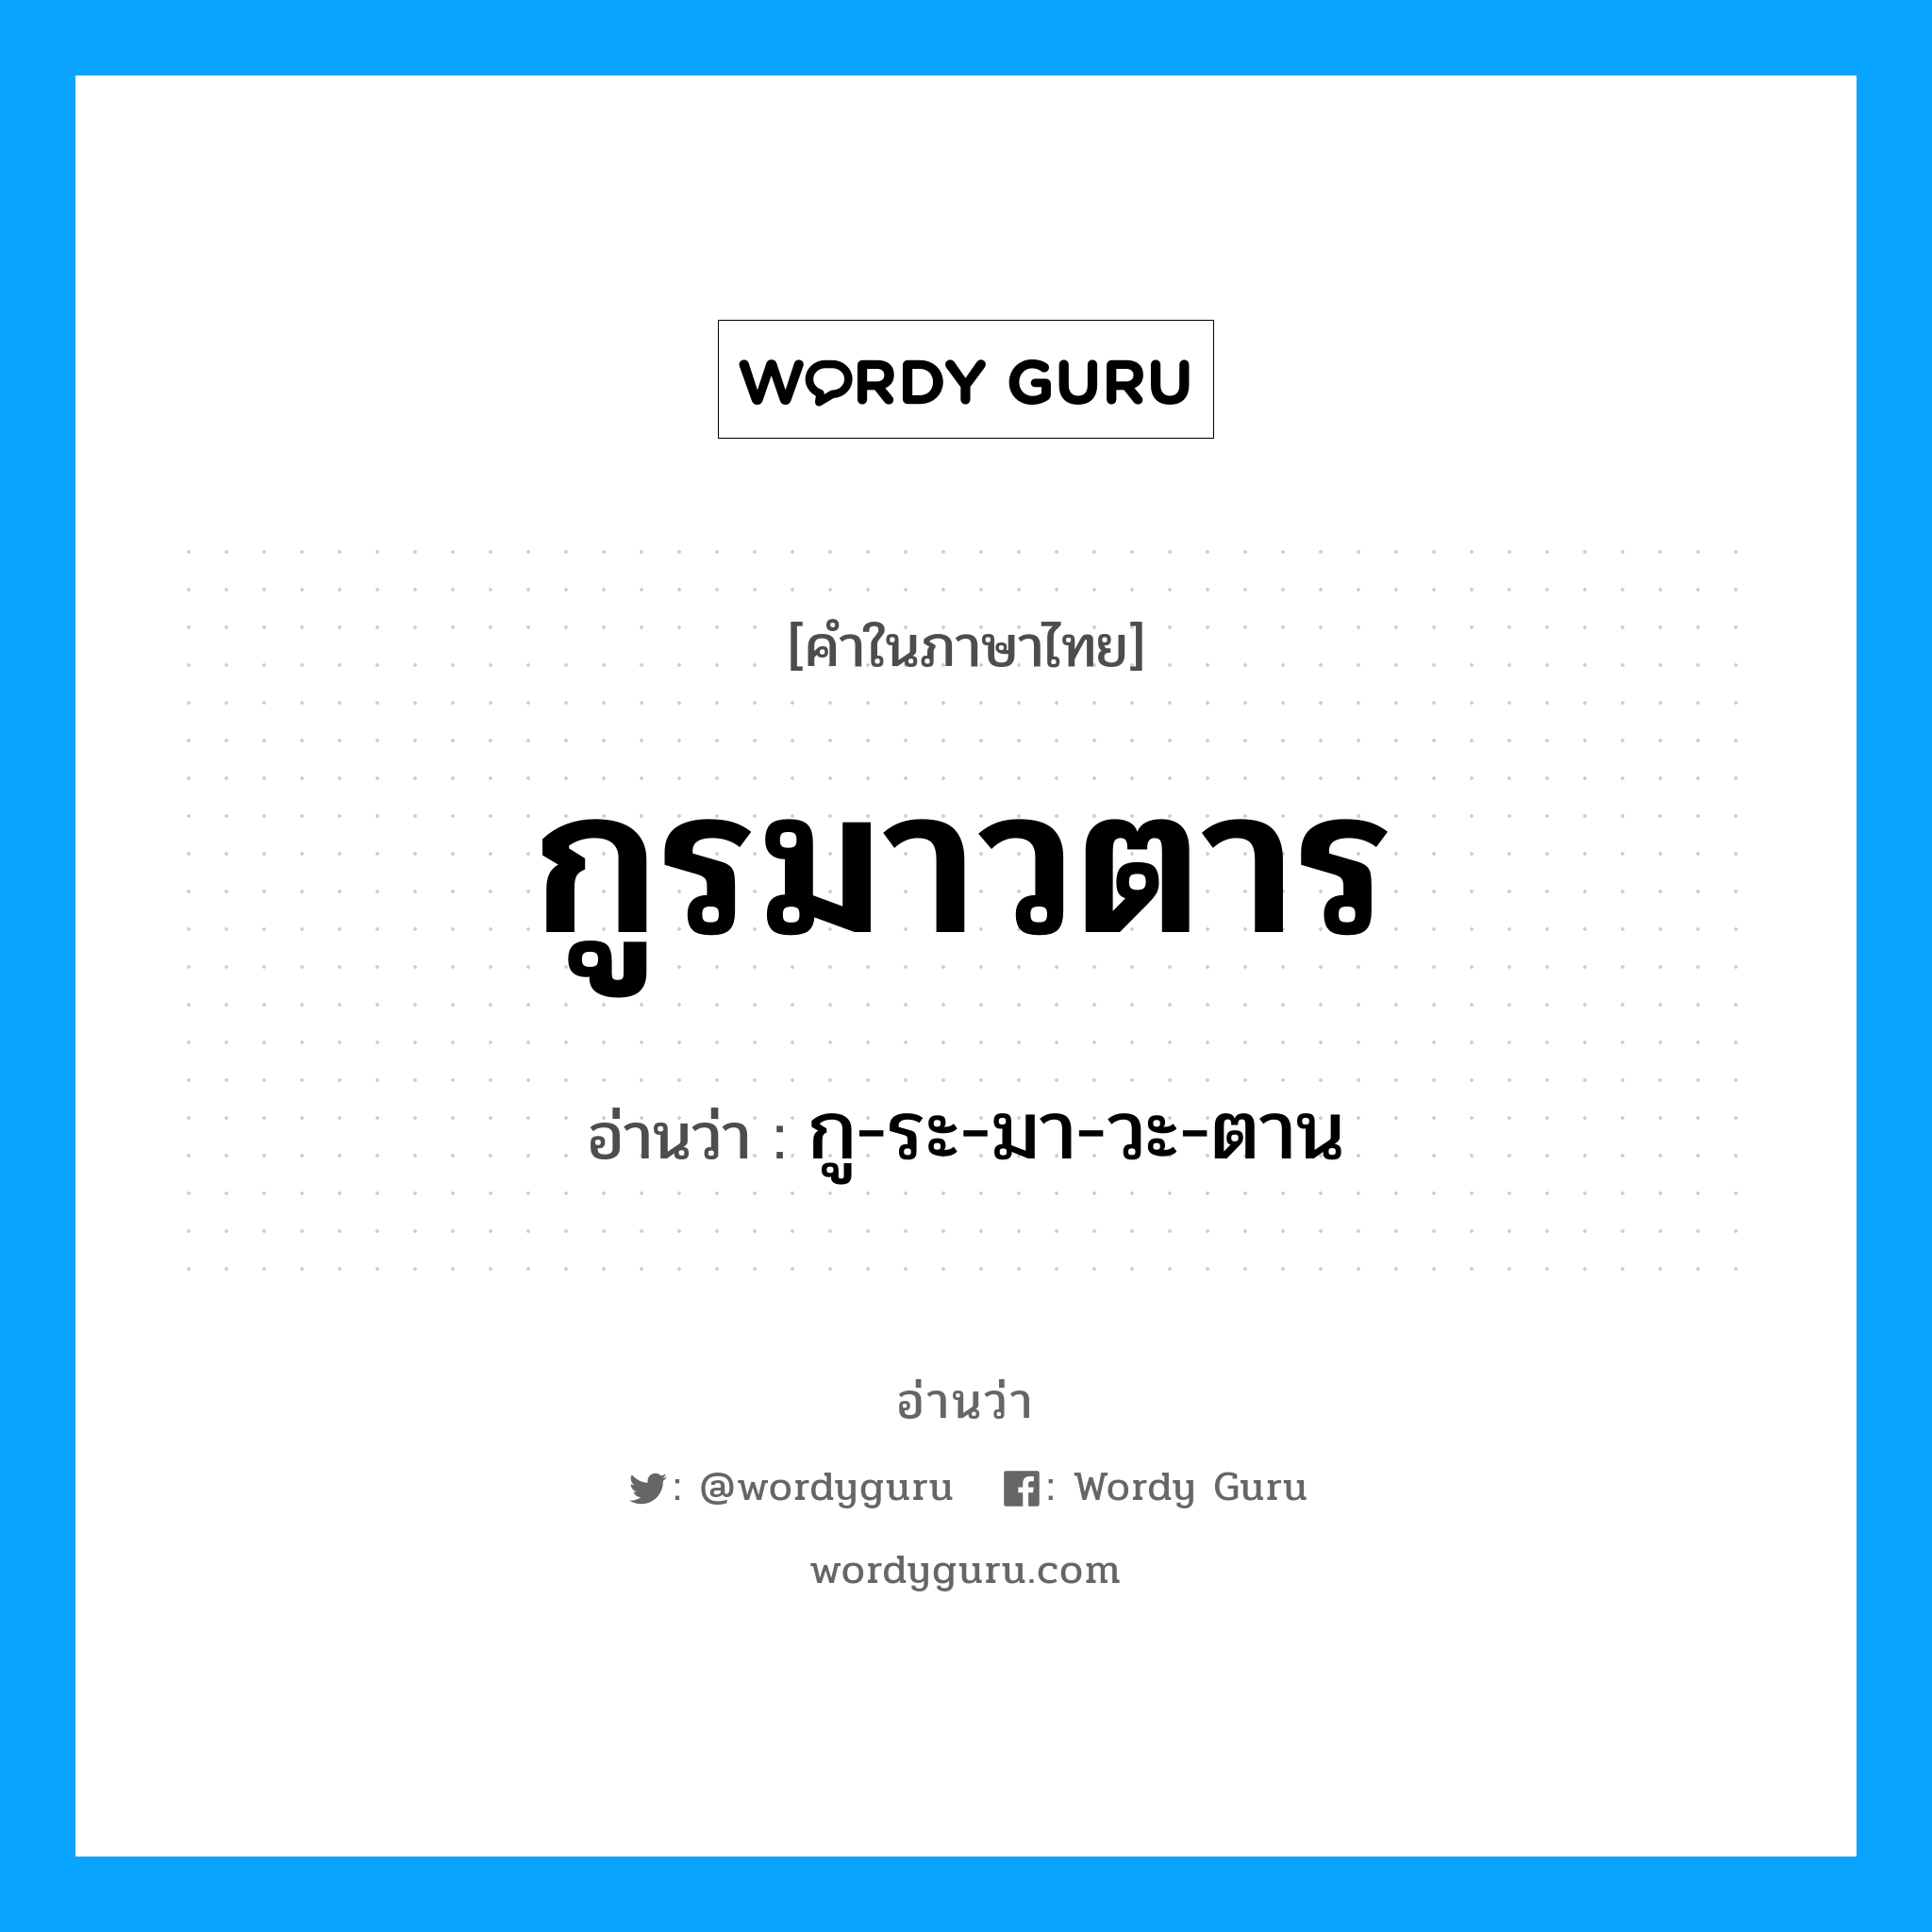 กู-ระ-มา-วะ-ตาน เป็นคำอ่านของคำไหน?, คำในภาษาไทย กู-ระ-มา-วะ-ตาน อ่านว่า กูรมาวตาร